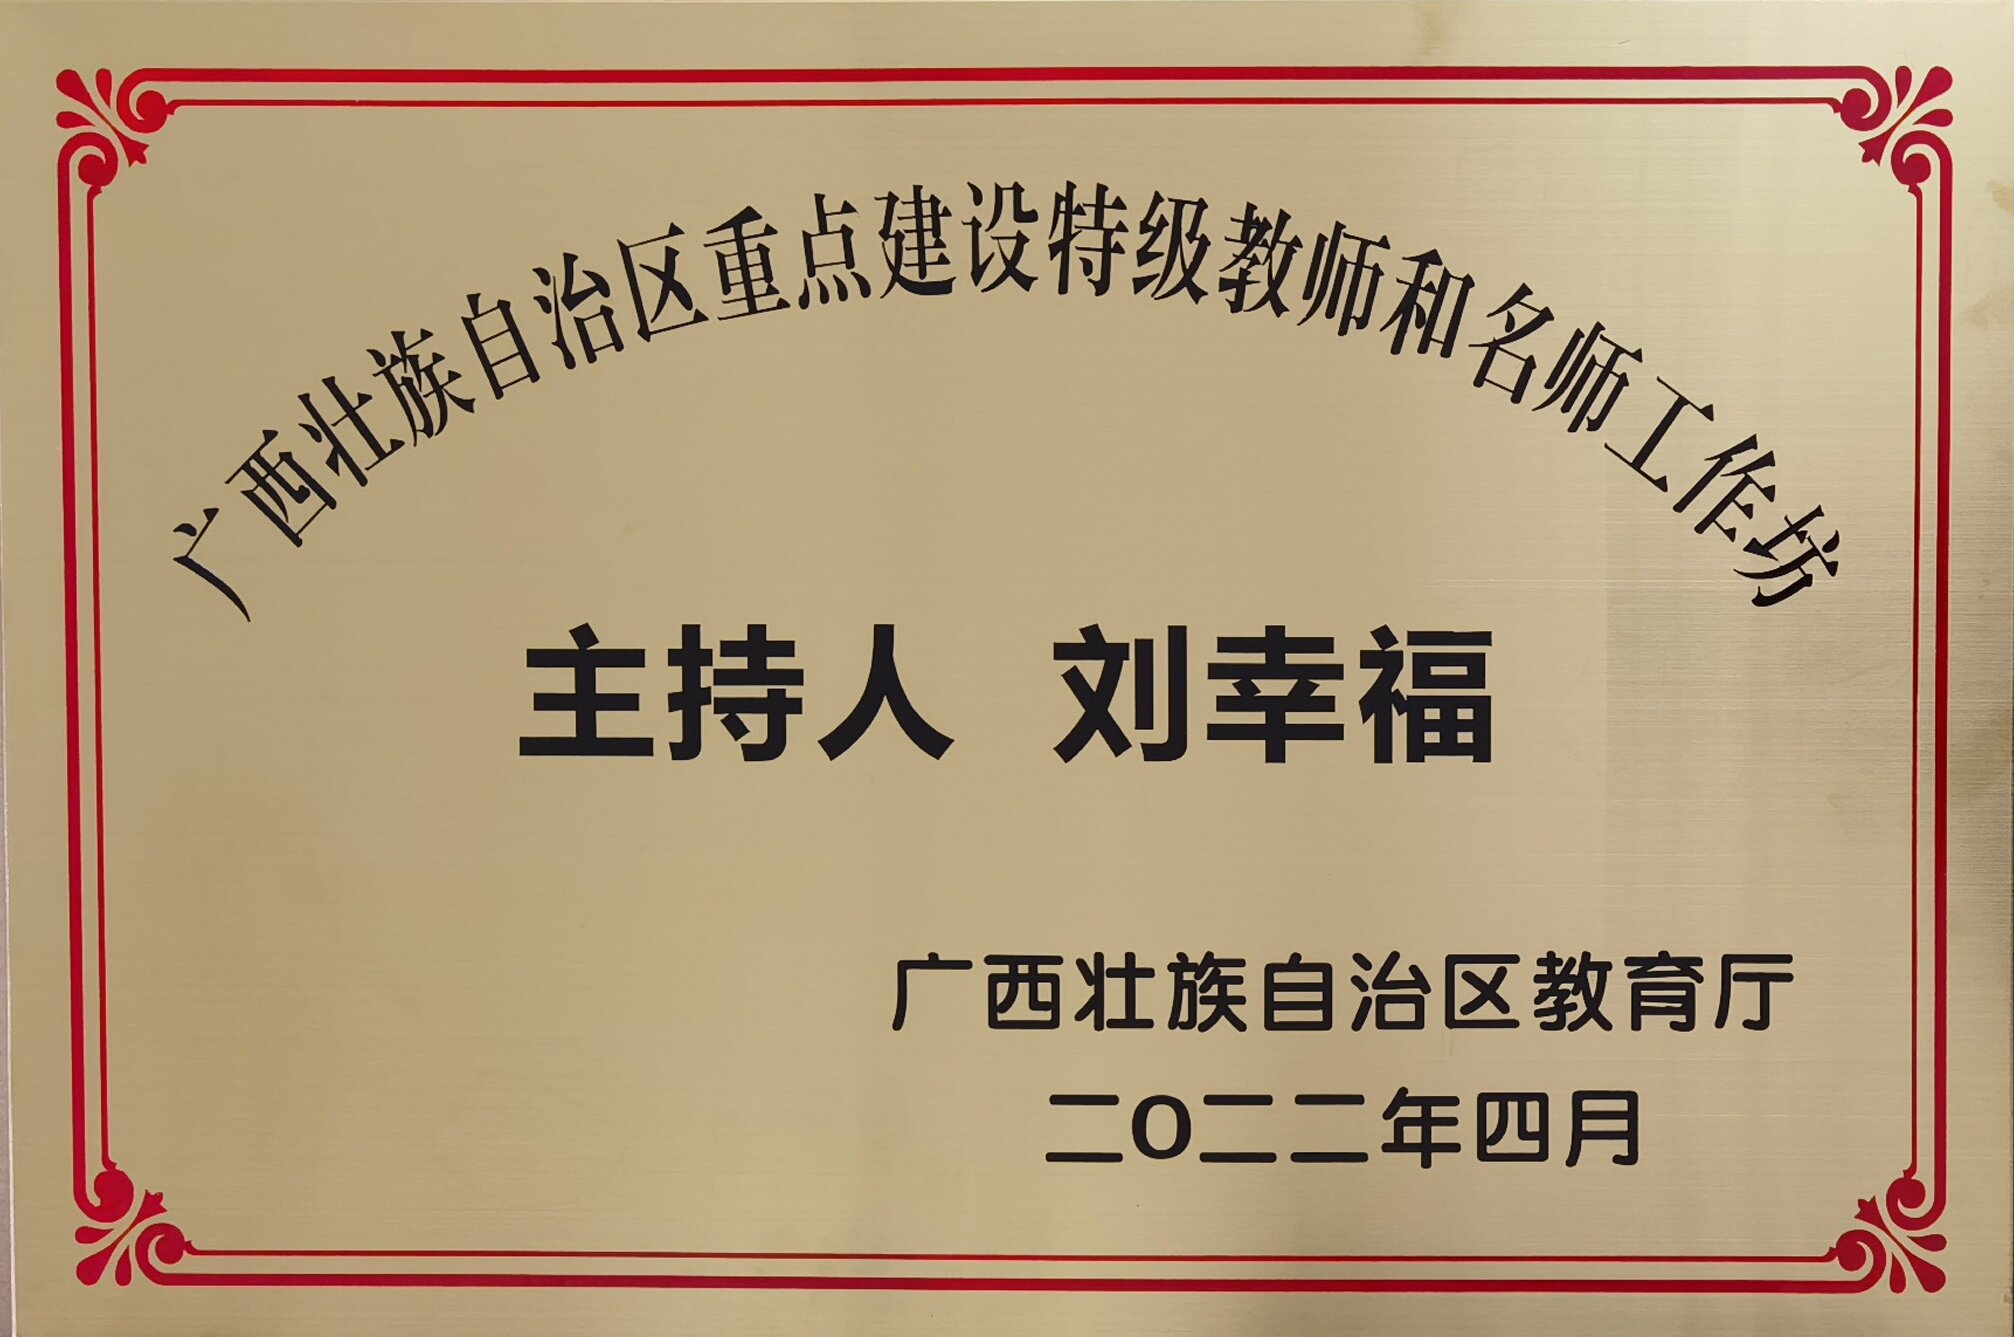 广西壮族自治重点建设特级教师和名师工作坊